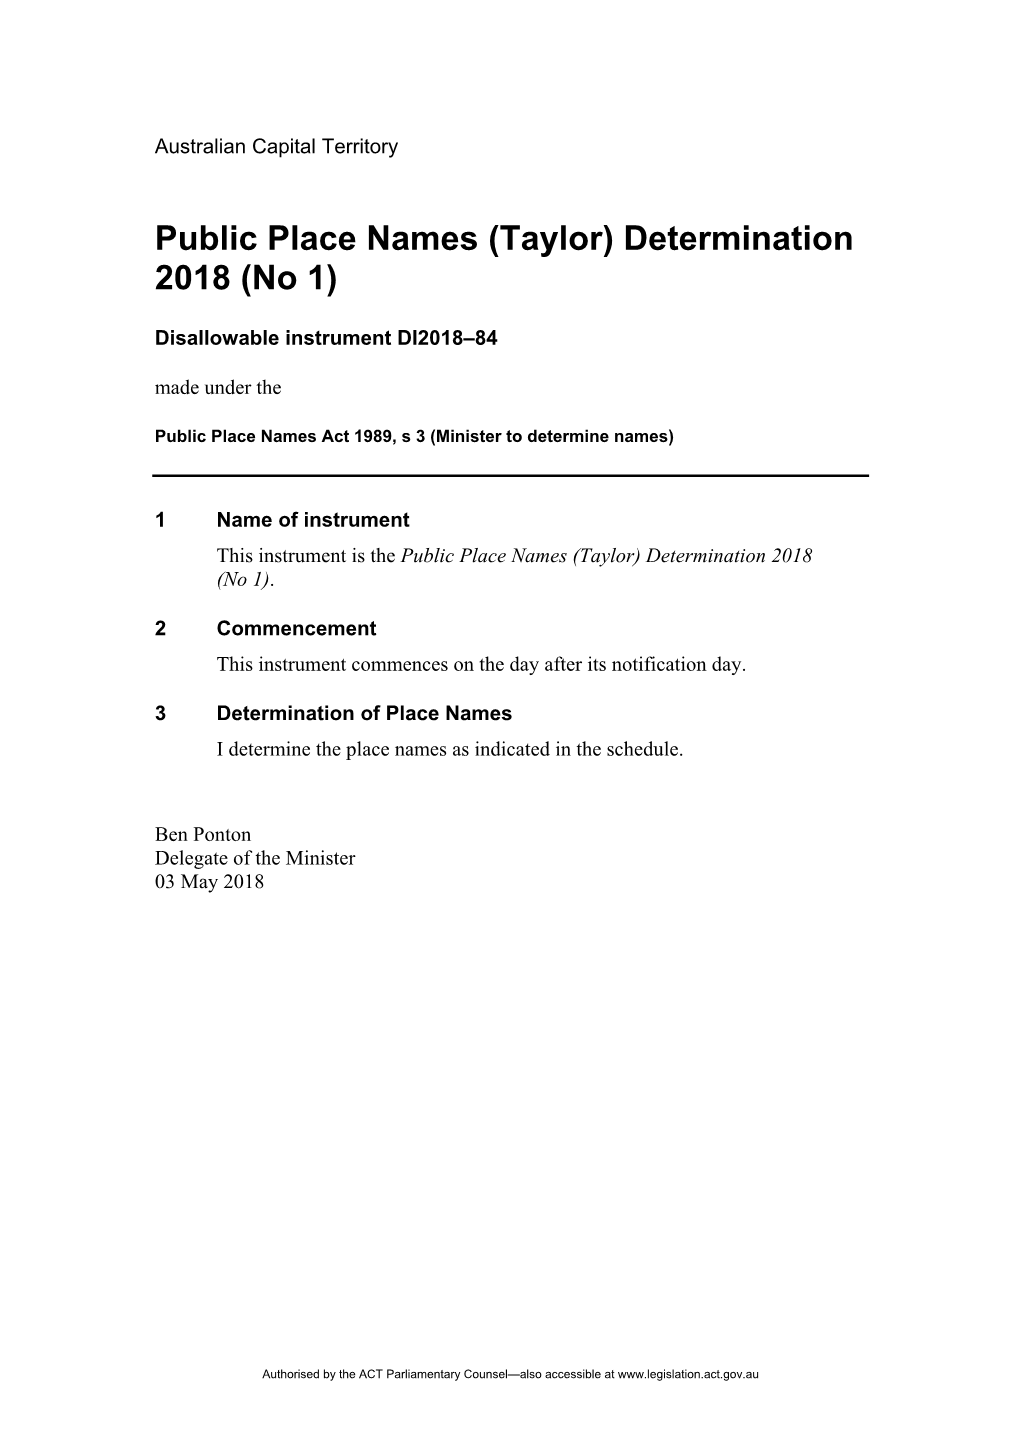 Public Place Names (Taylor) Determination 2018 (No 1)